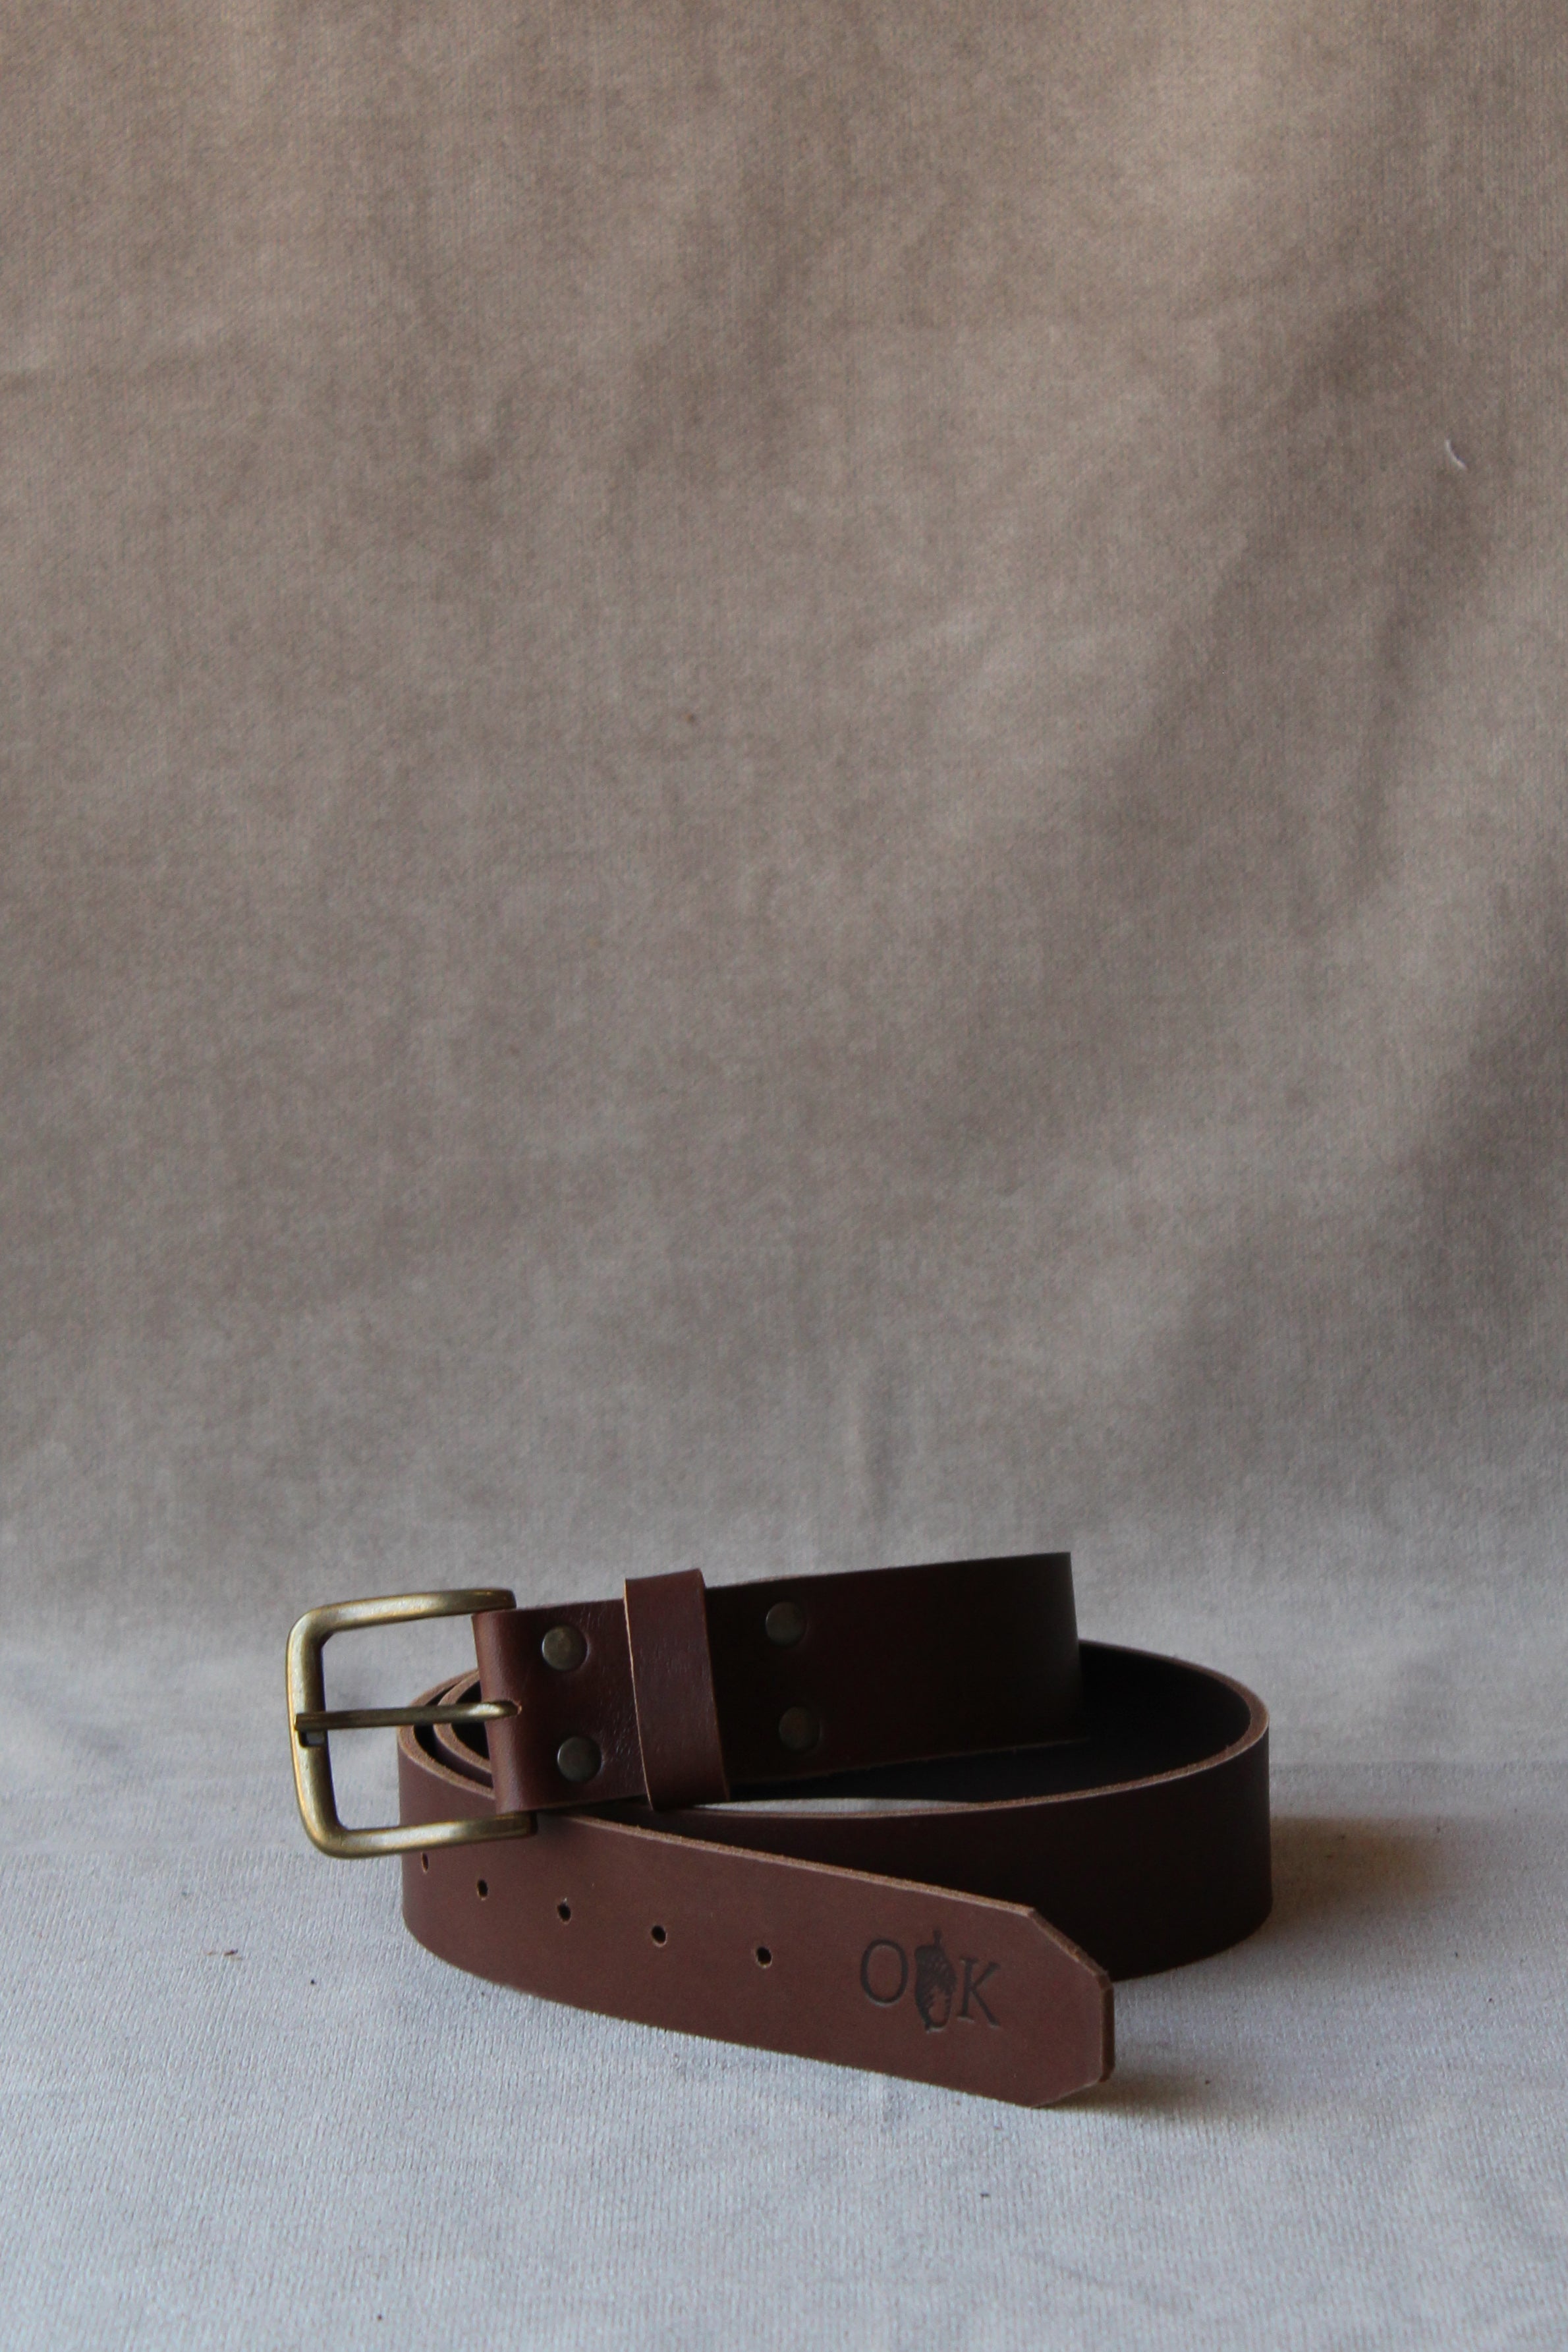 photo of the men's belt